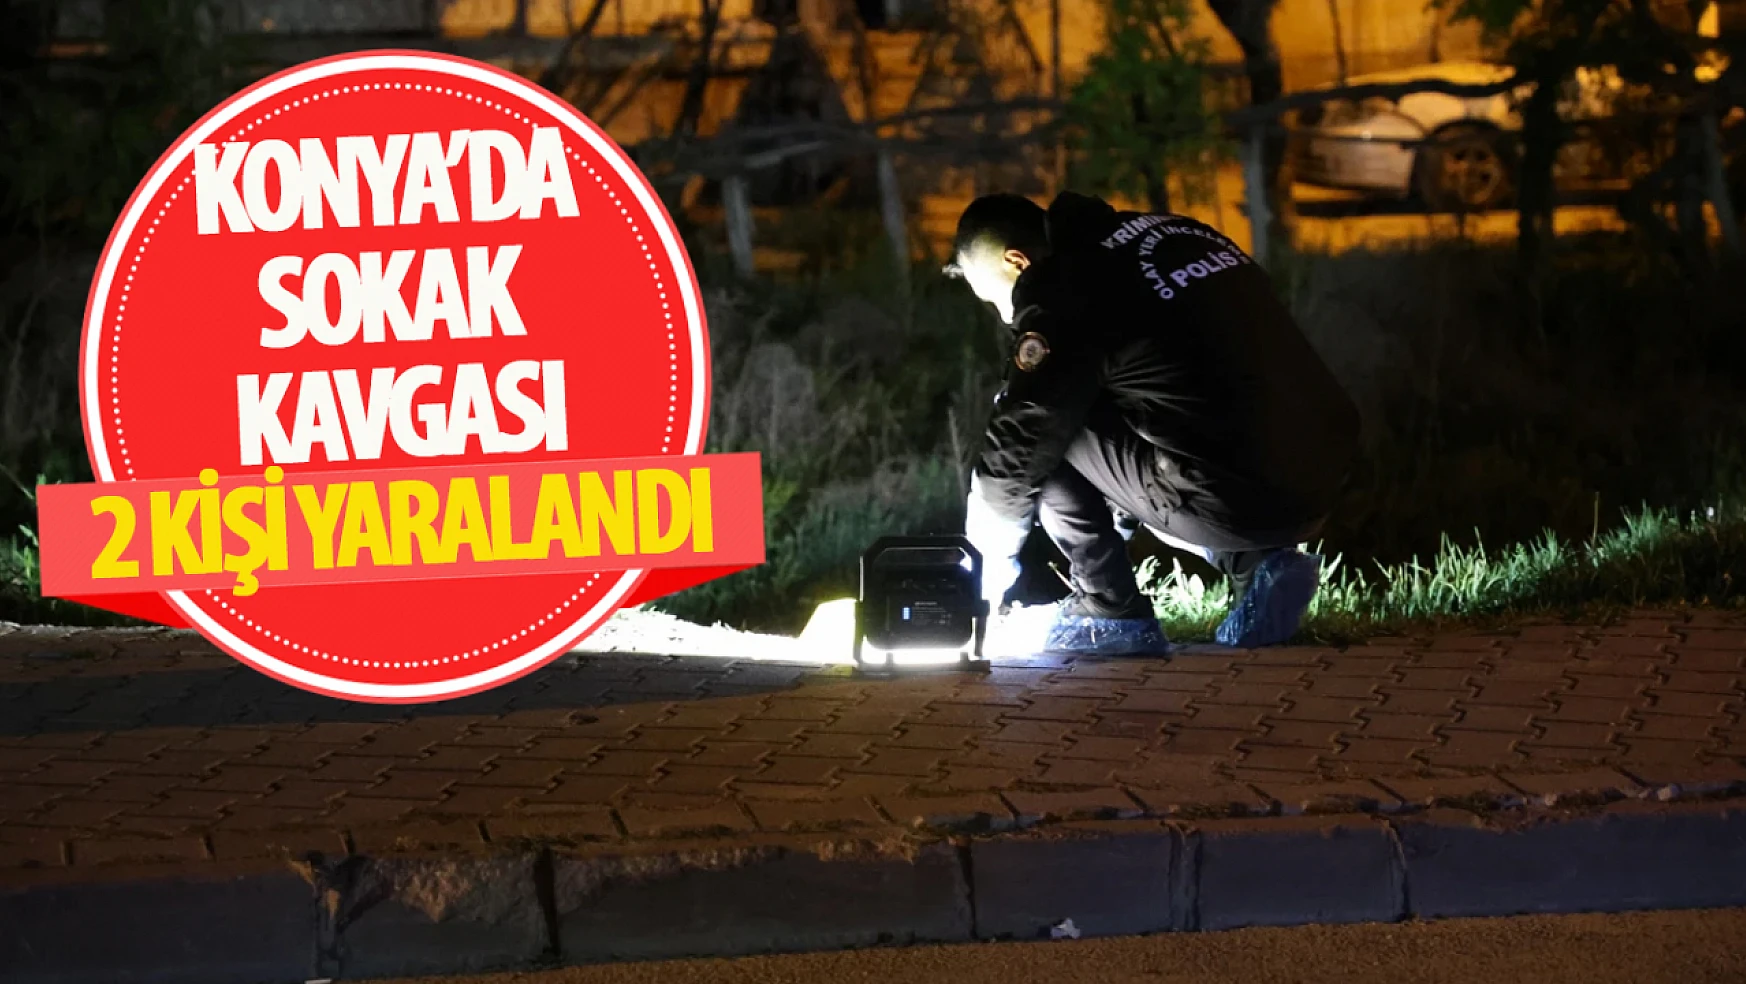 Konya'da sokak kavgası: husumetli gruplar arasında 2 yaralı!